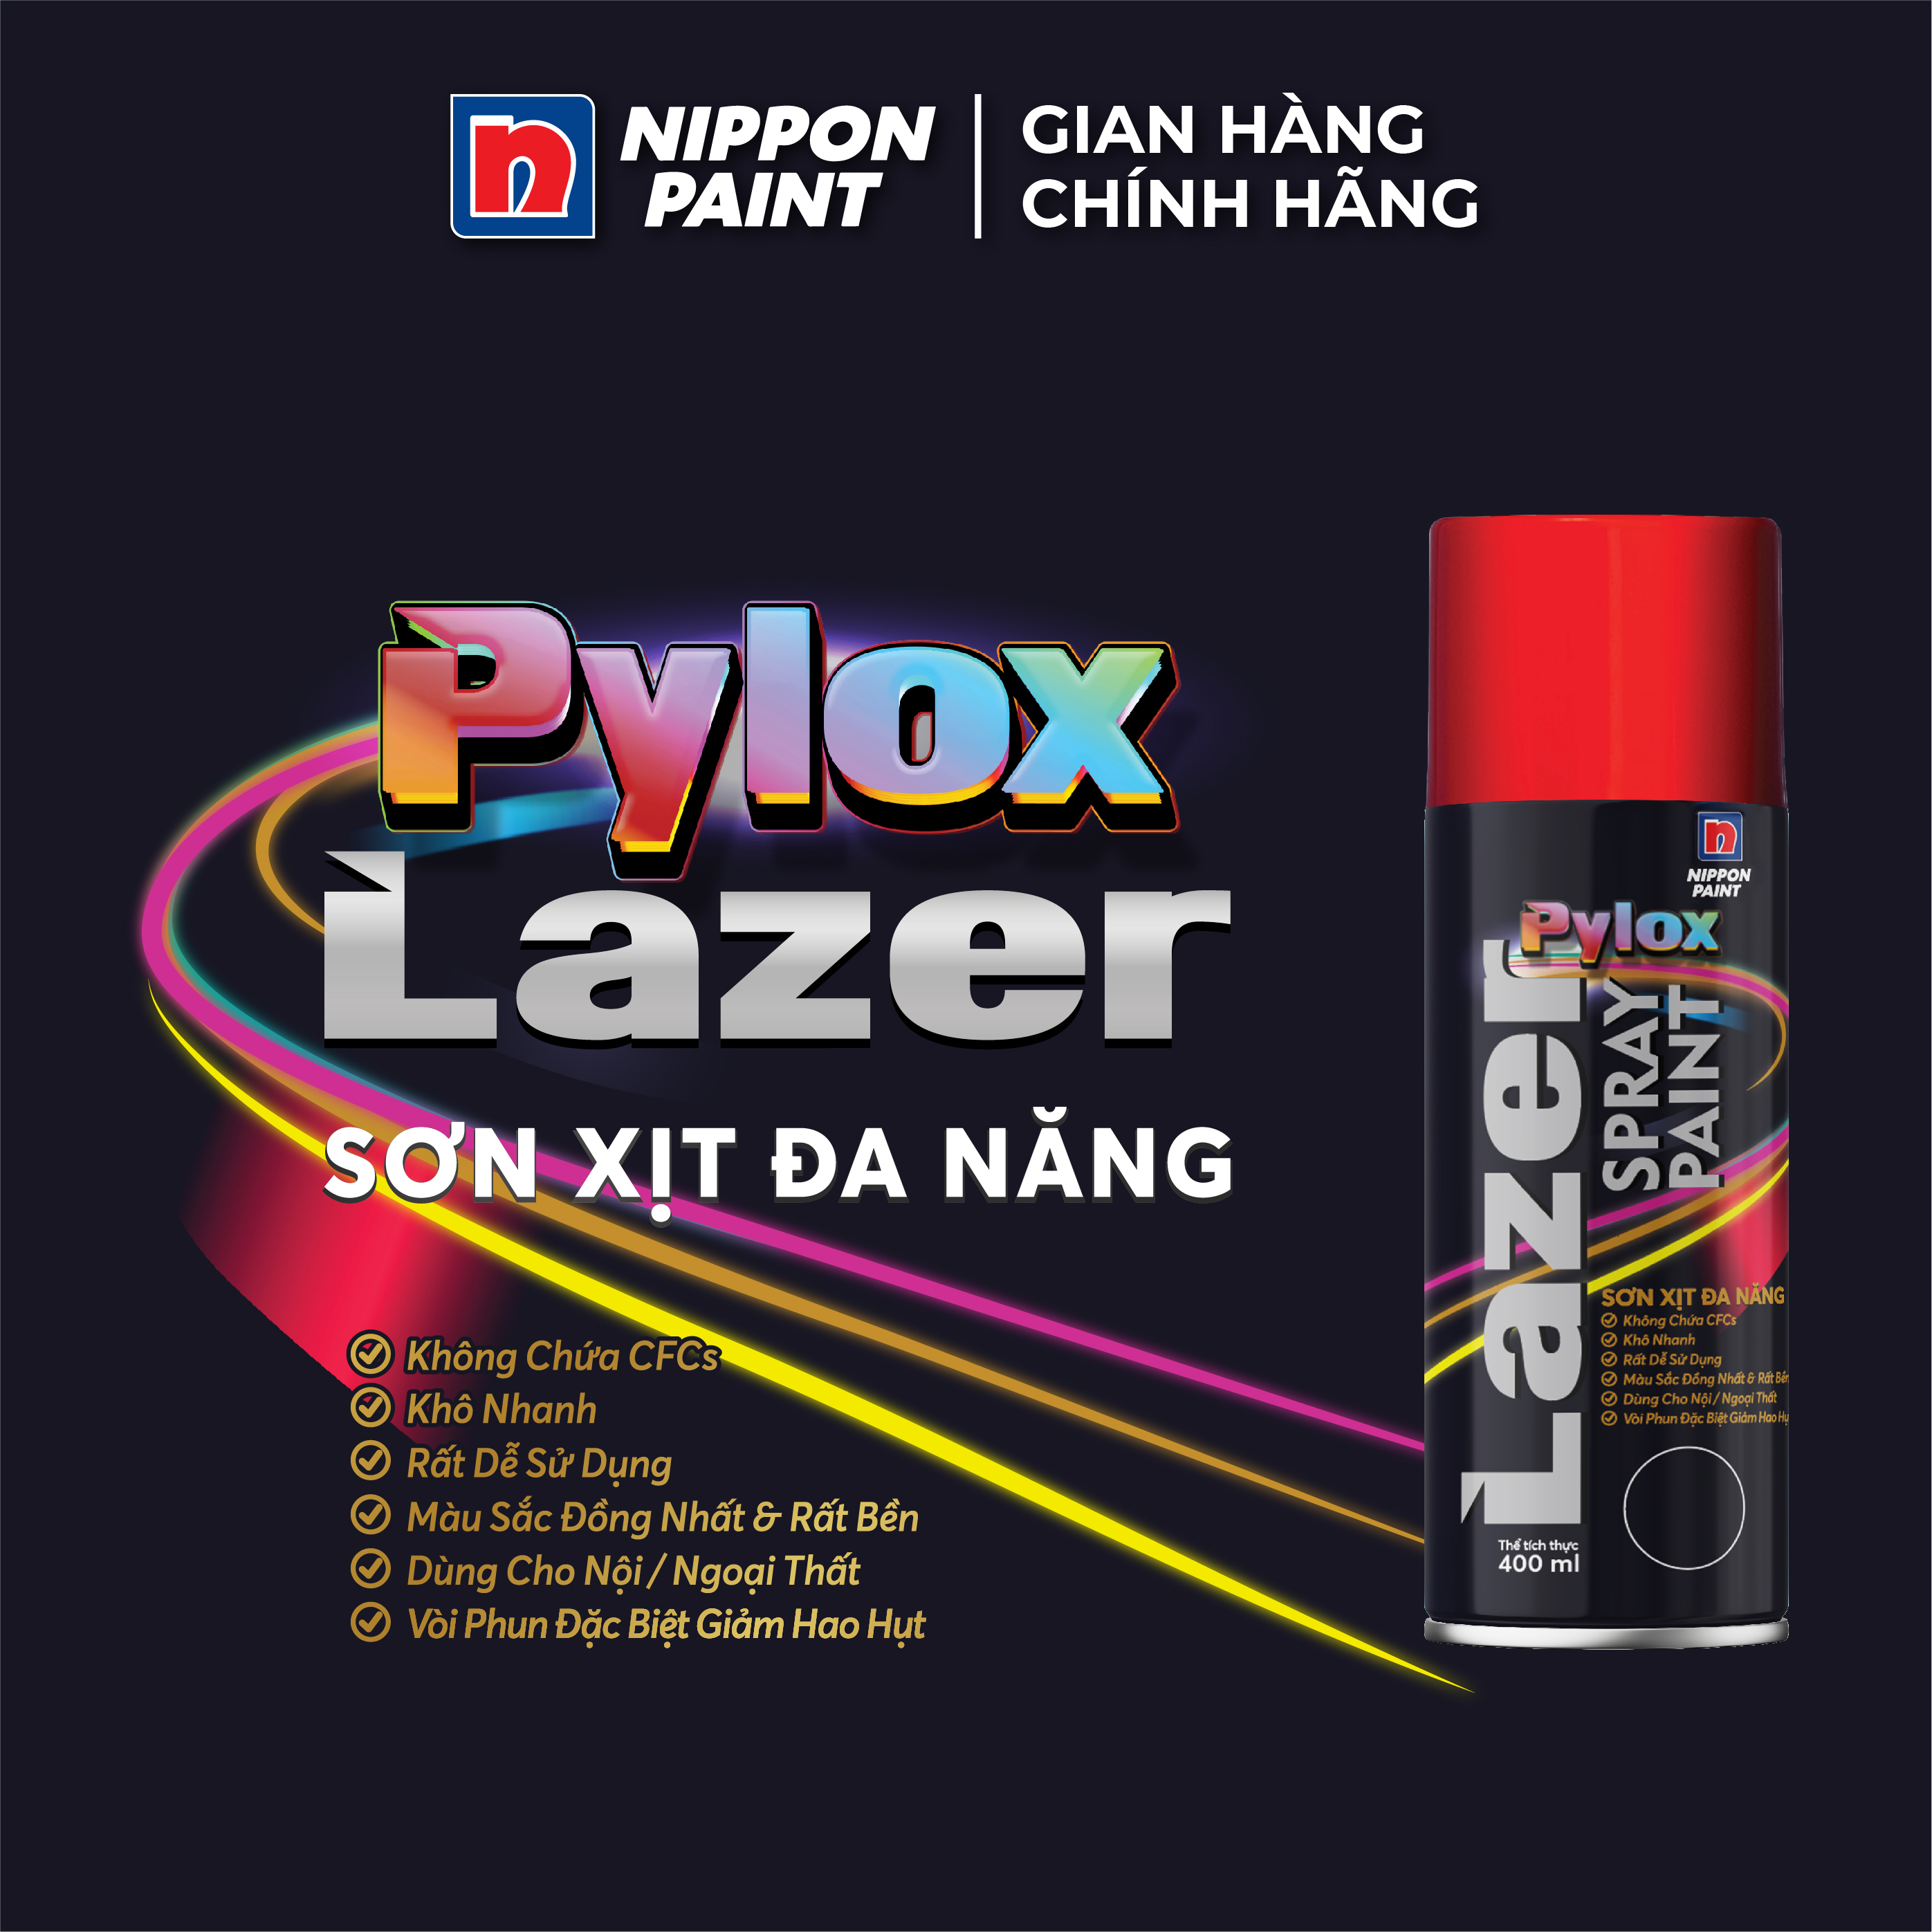 Sơn xịt đa năng Pylox Lazer  - 30 PEACH RED - Chính hãng NIPPON PAINT - Dung tích 400ml